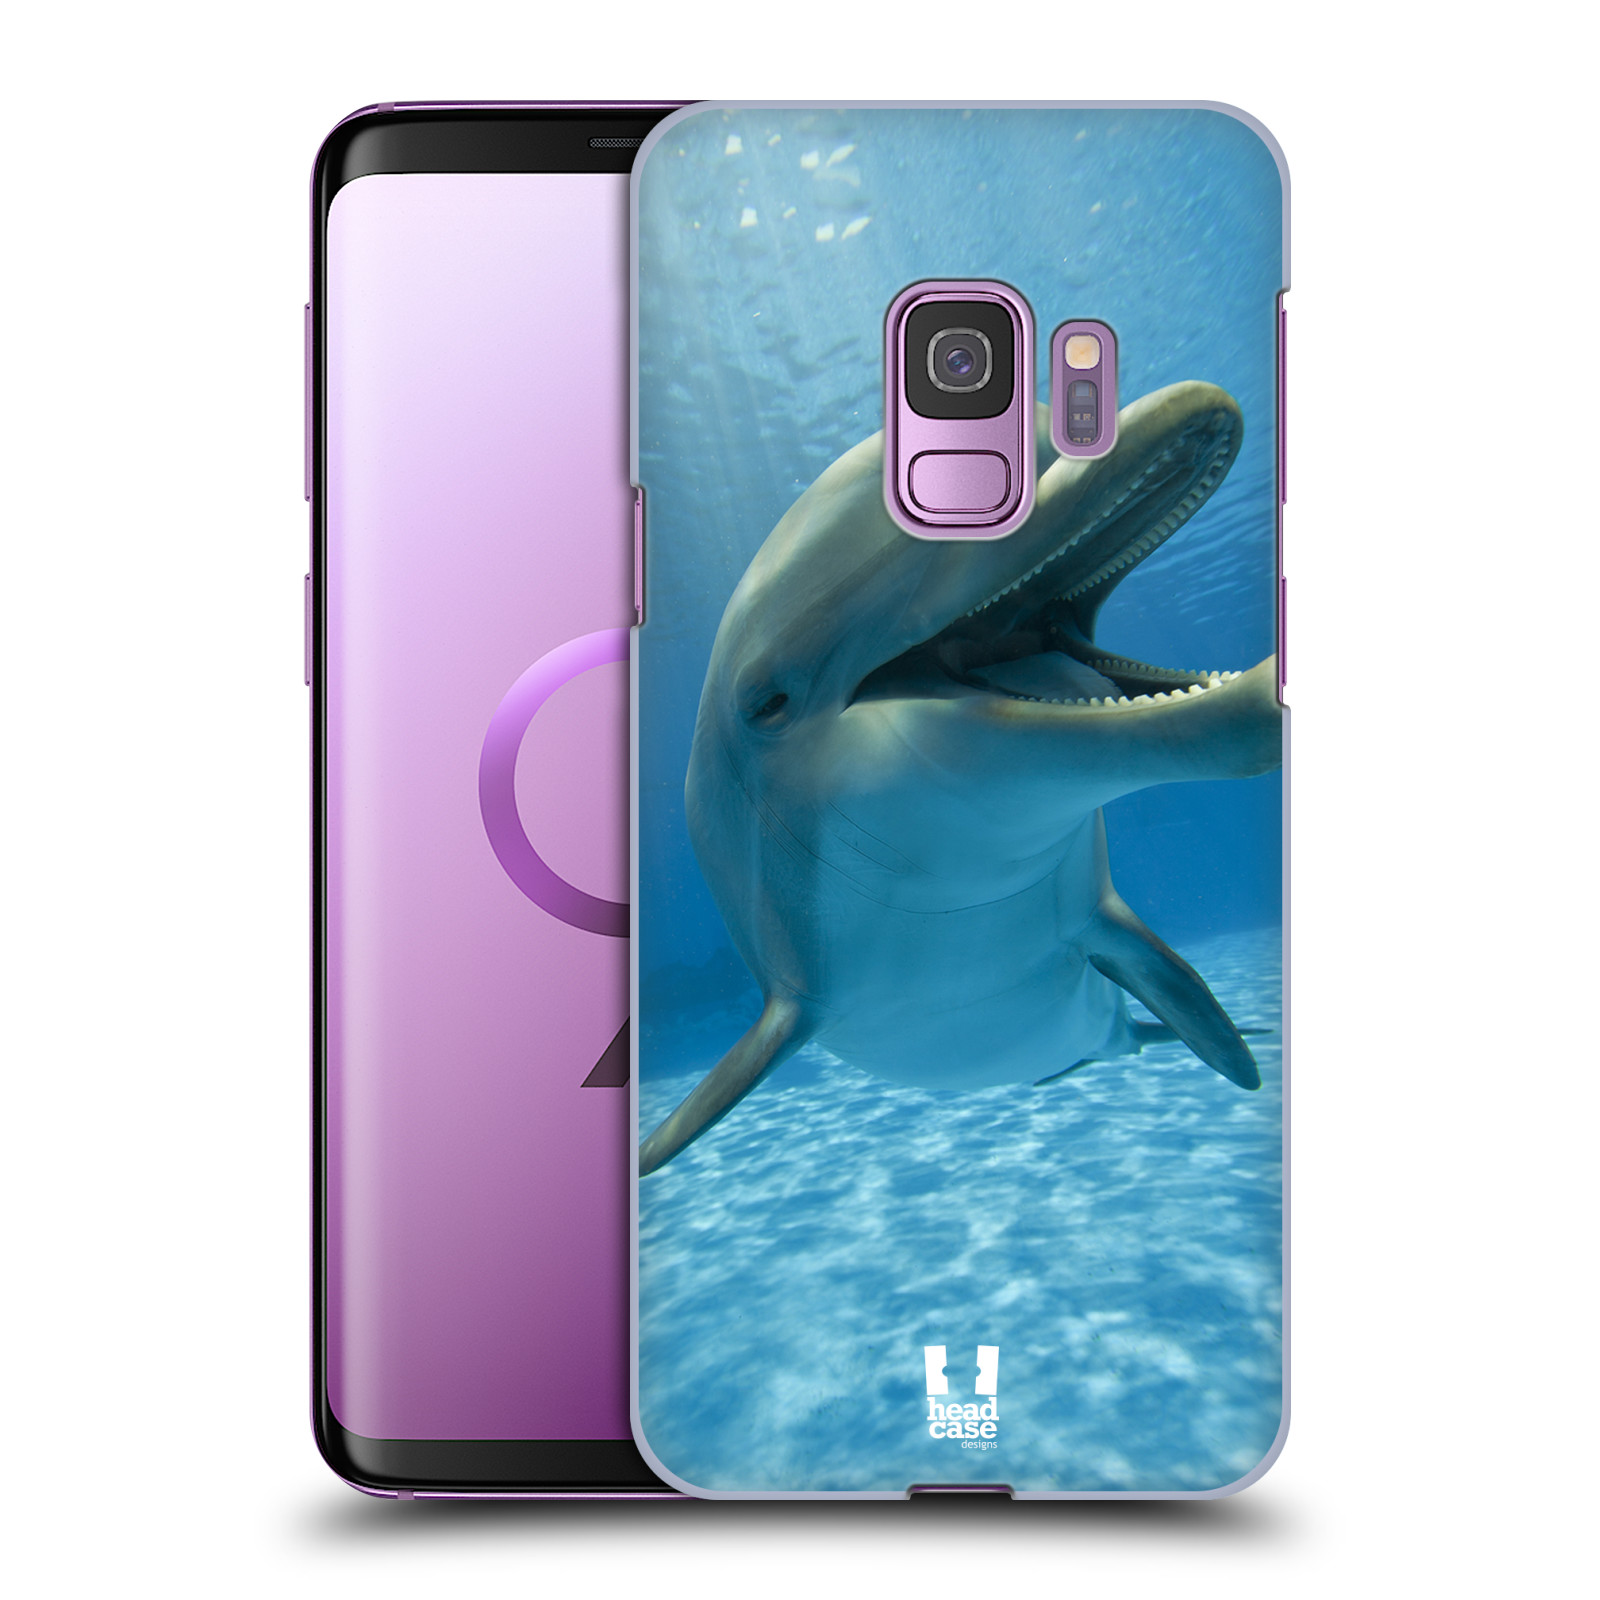 Zadní obal pro mobil Samsung Galaxy S9 - HEAD CASE - Svět zvířat delfín v moři